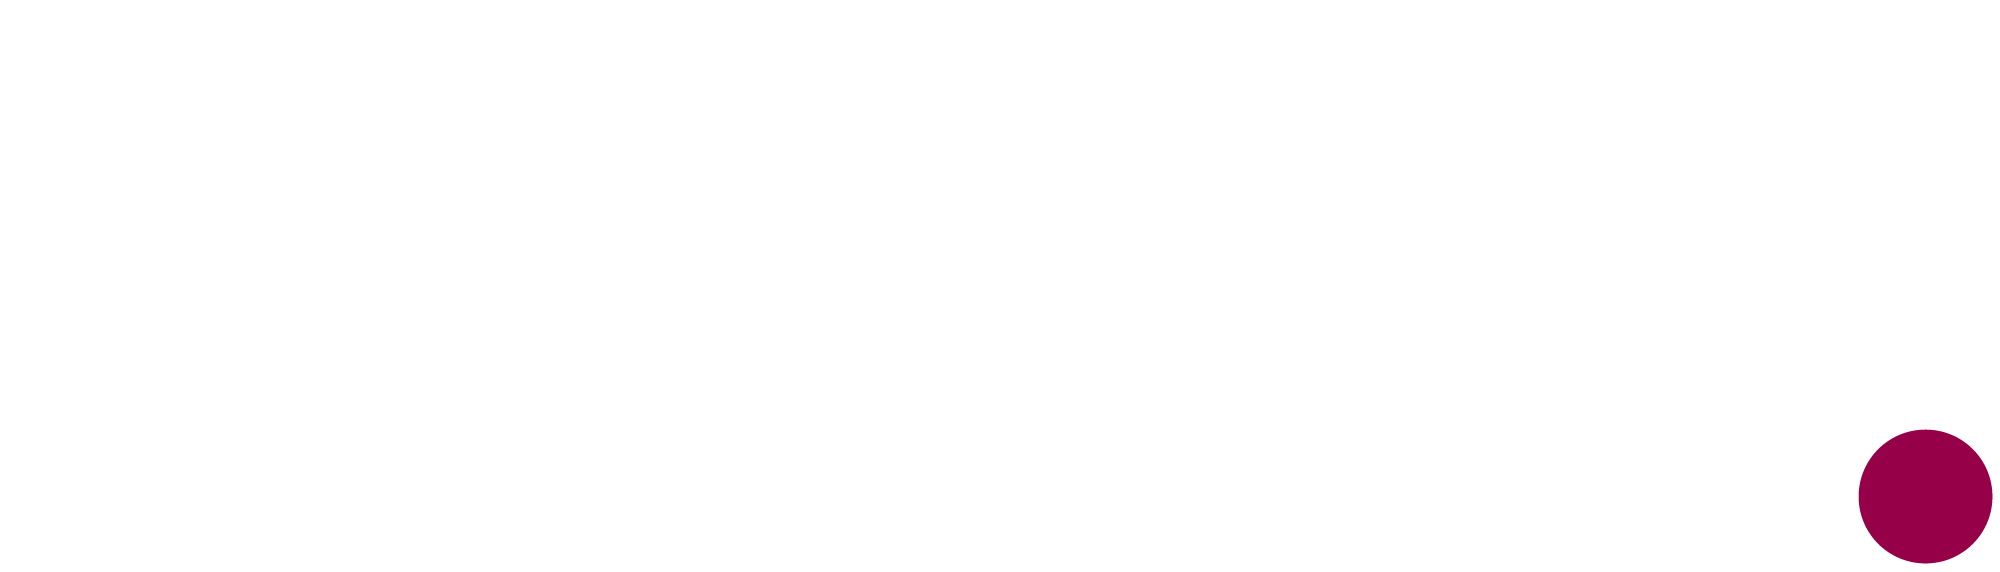 Goji Design Logo For Website Header